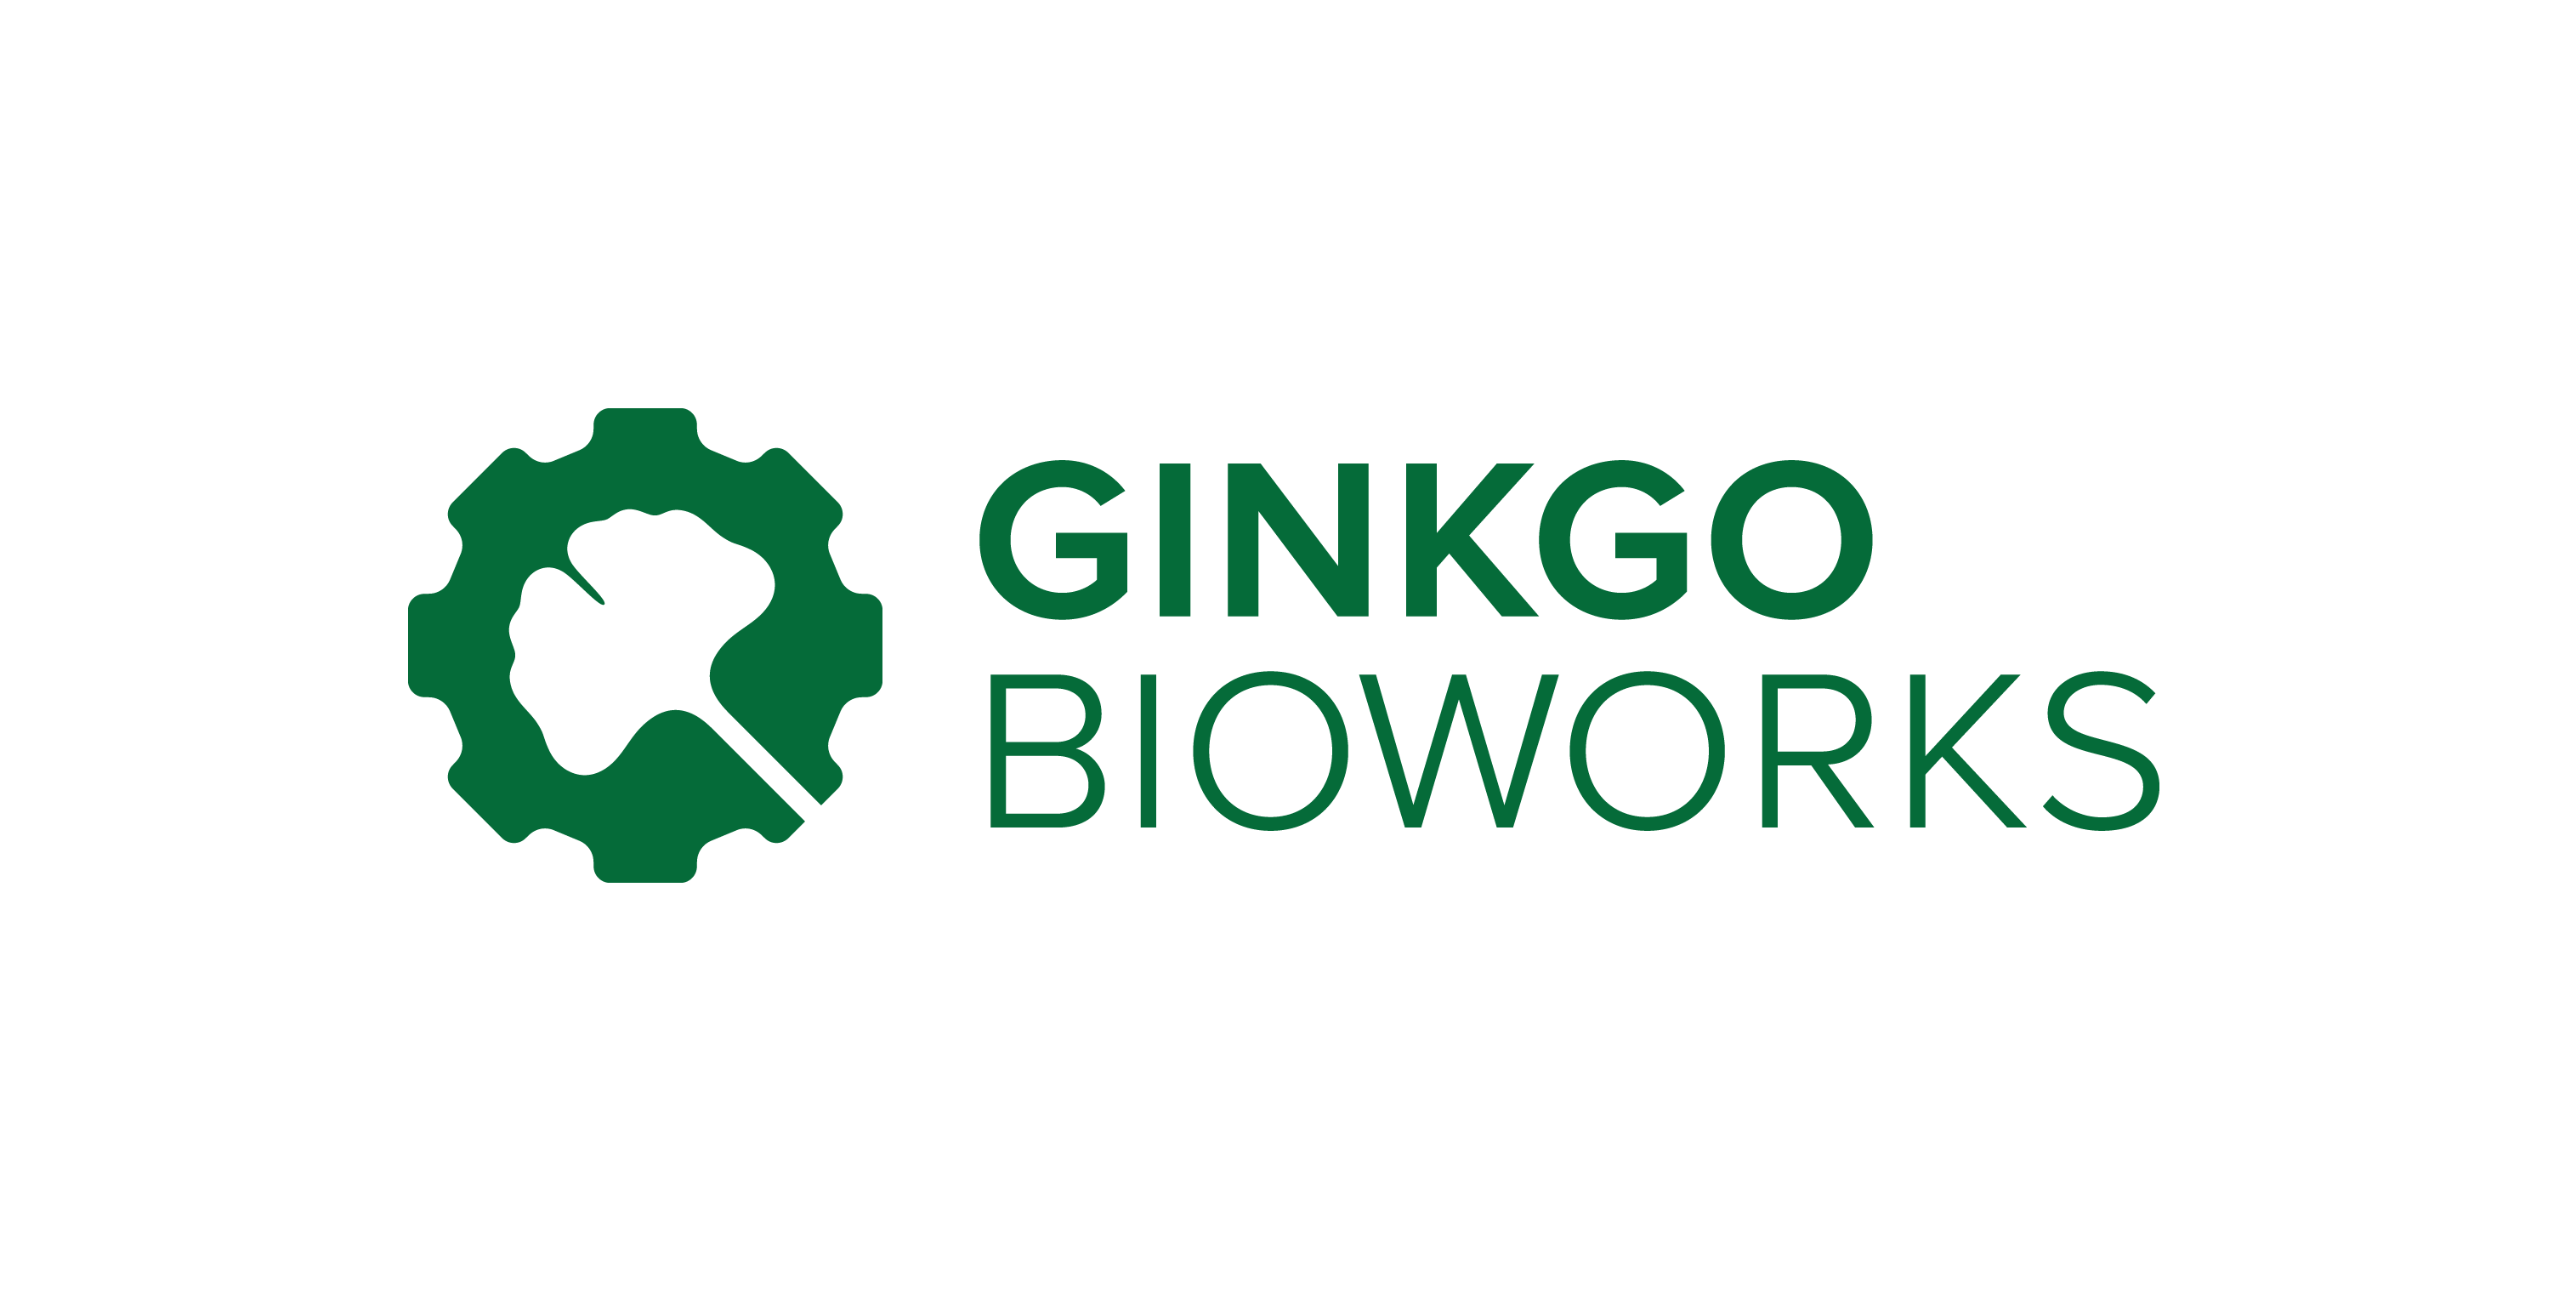 Ginkgo Bioworks